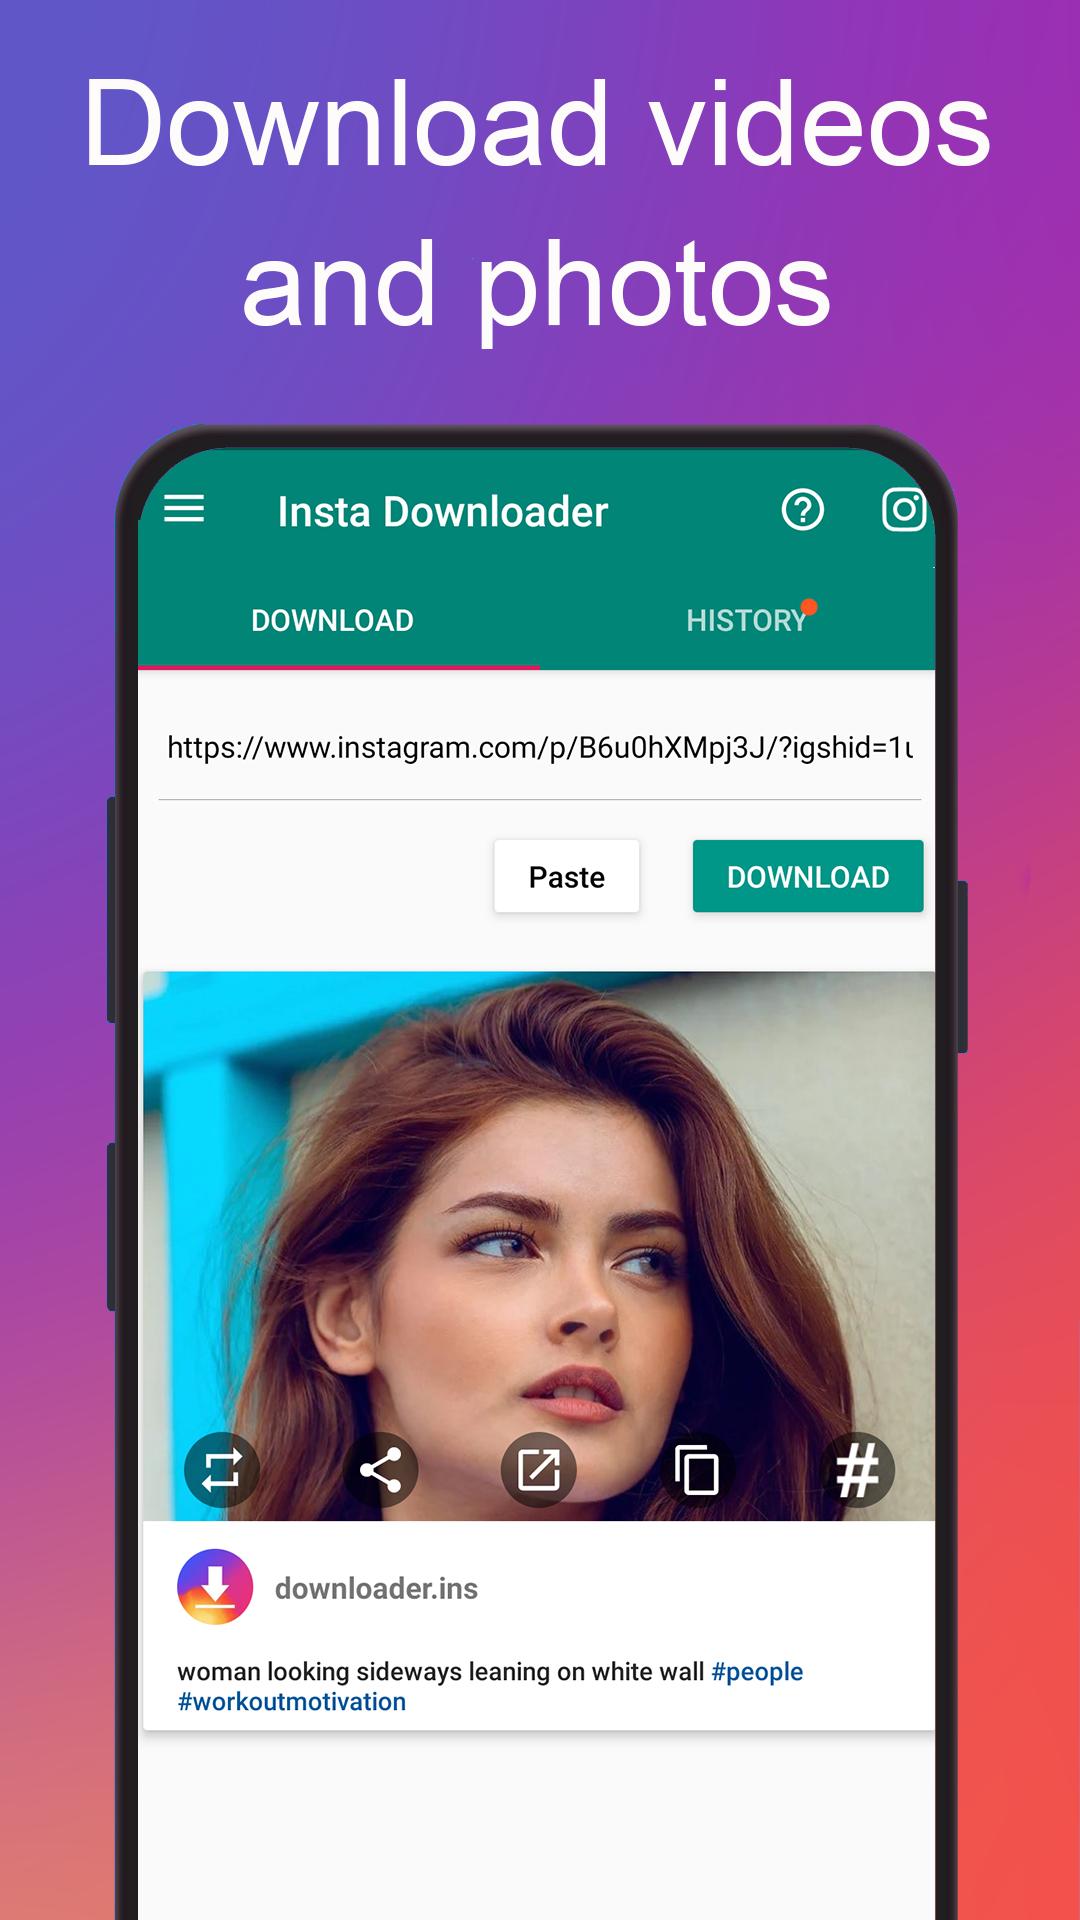 Video Downloader for Instagram APK 1.15.0 Download for Android – Download  Video Downloader for Instagram APK Latest Version - APKFab.com